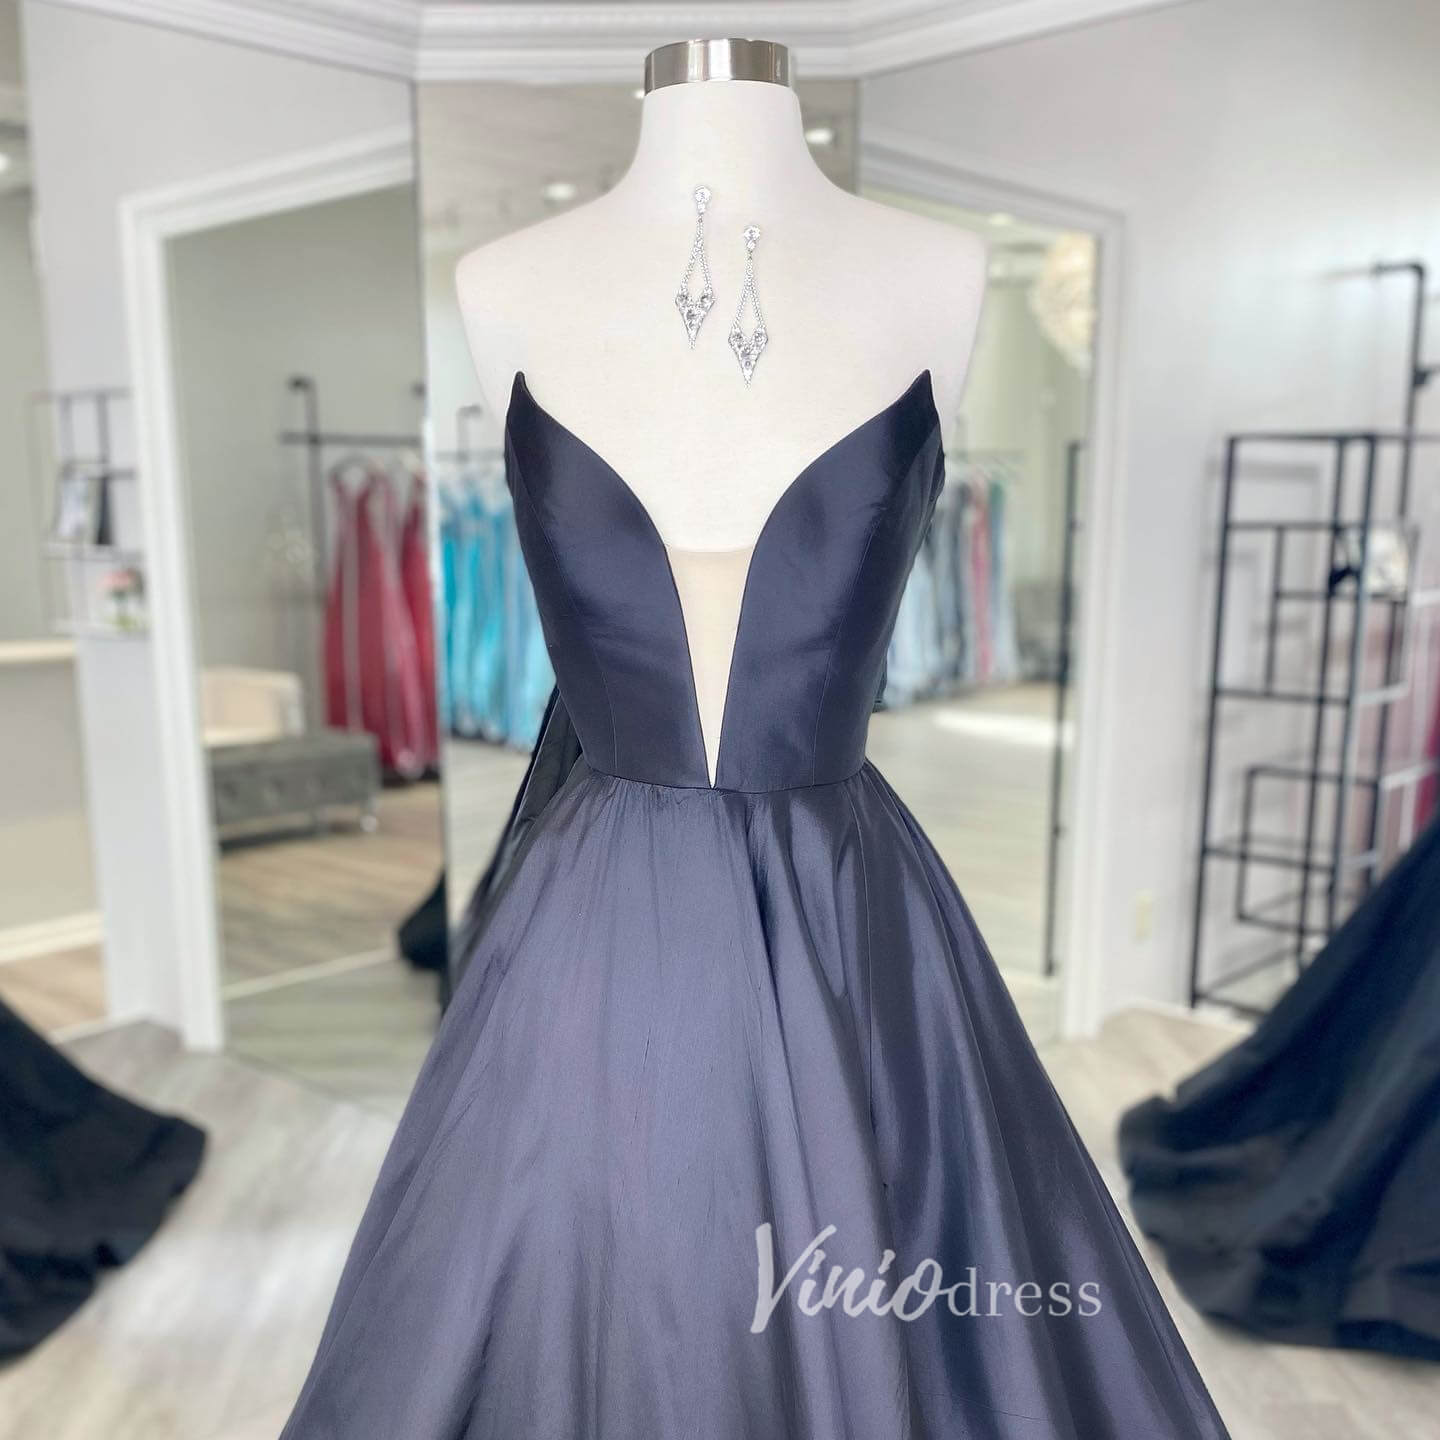 Black Strapless Prom Dresses Plunging V-Neck Evening Dress FD3039-prom dresses-Viniodress-Viniodress